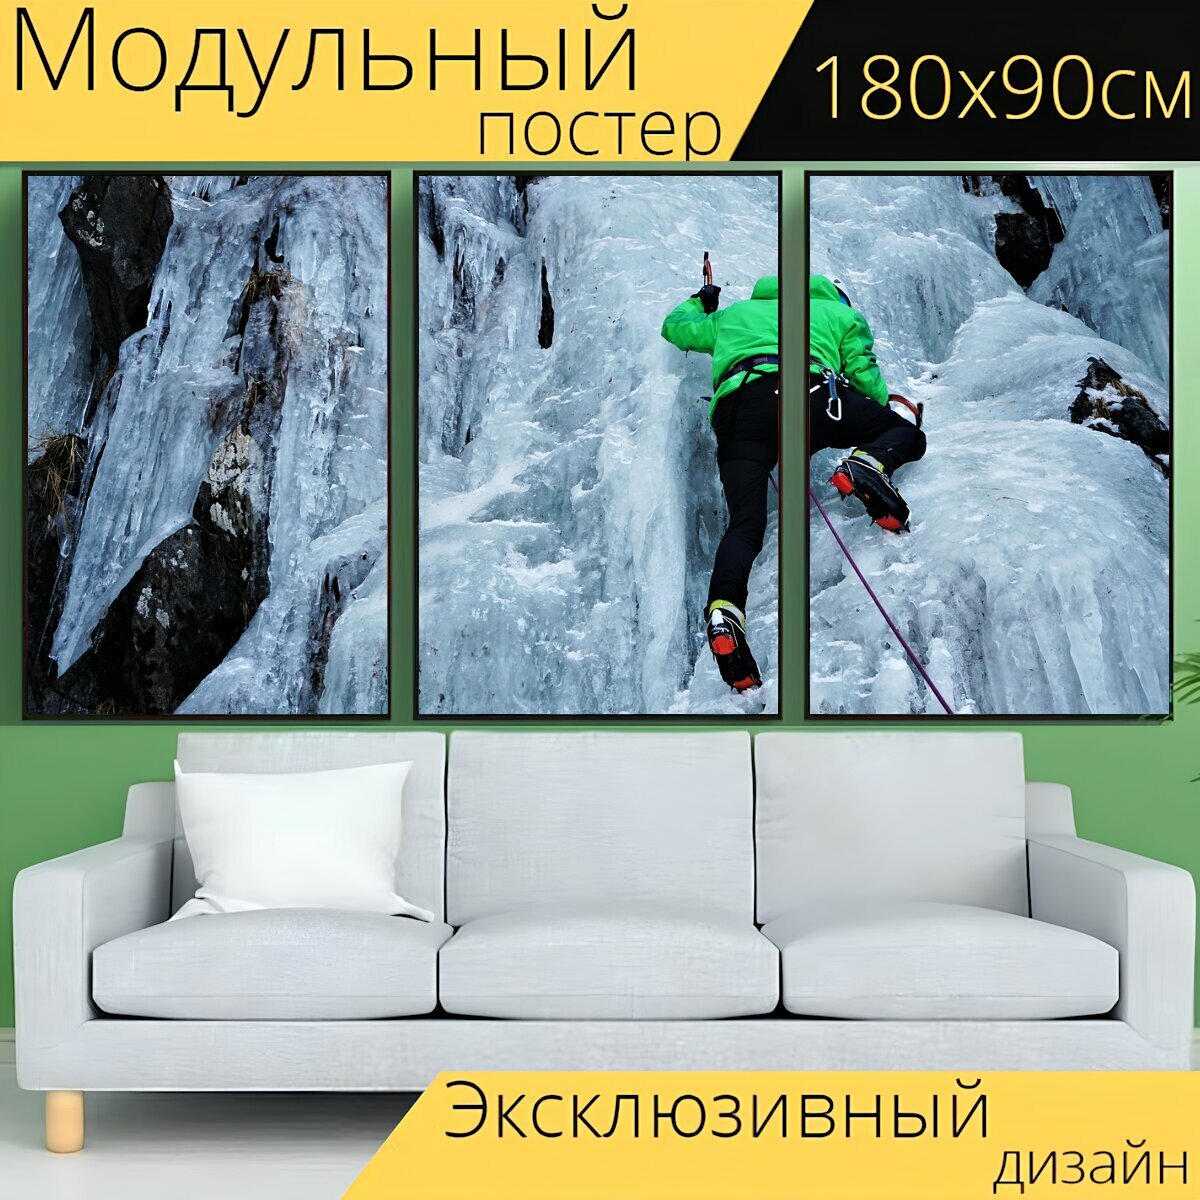 Модульный постер "Альпинизм, ледолазание, веревка" 180 x 90 см. для интерьера